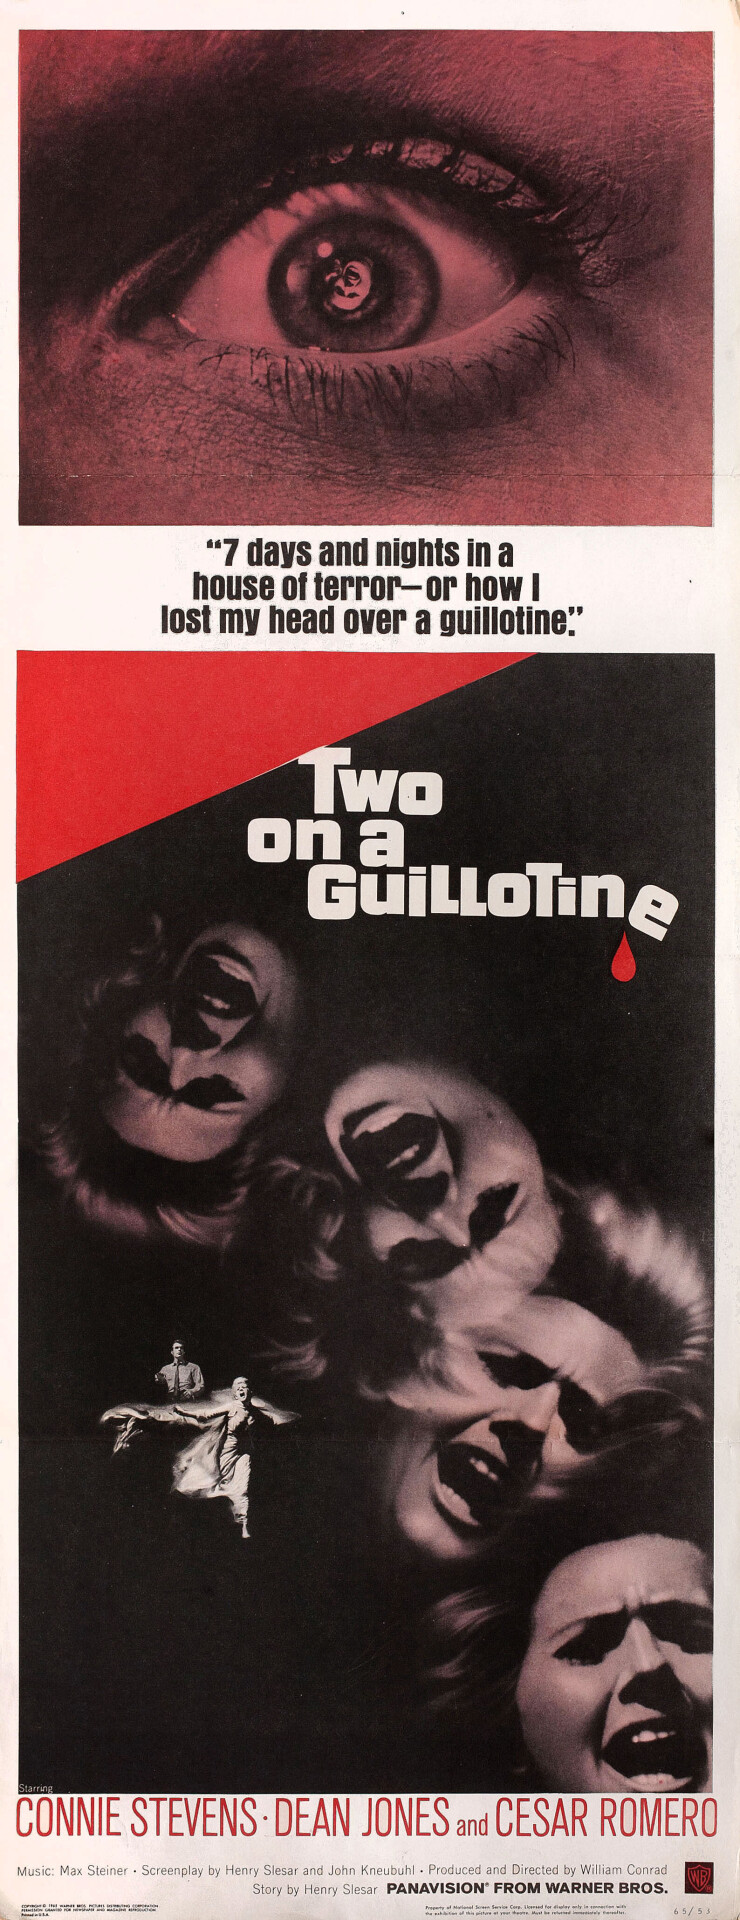 Двое на гильотине (Two on a Guillotine, 1965), режиссёр Уильям Конрад, американский постер к фильму (ужасы, 1965 год)